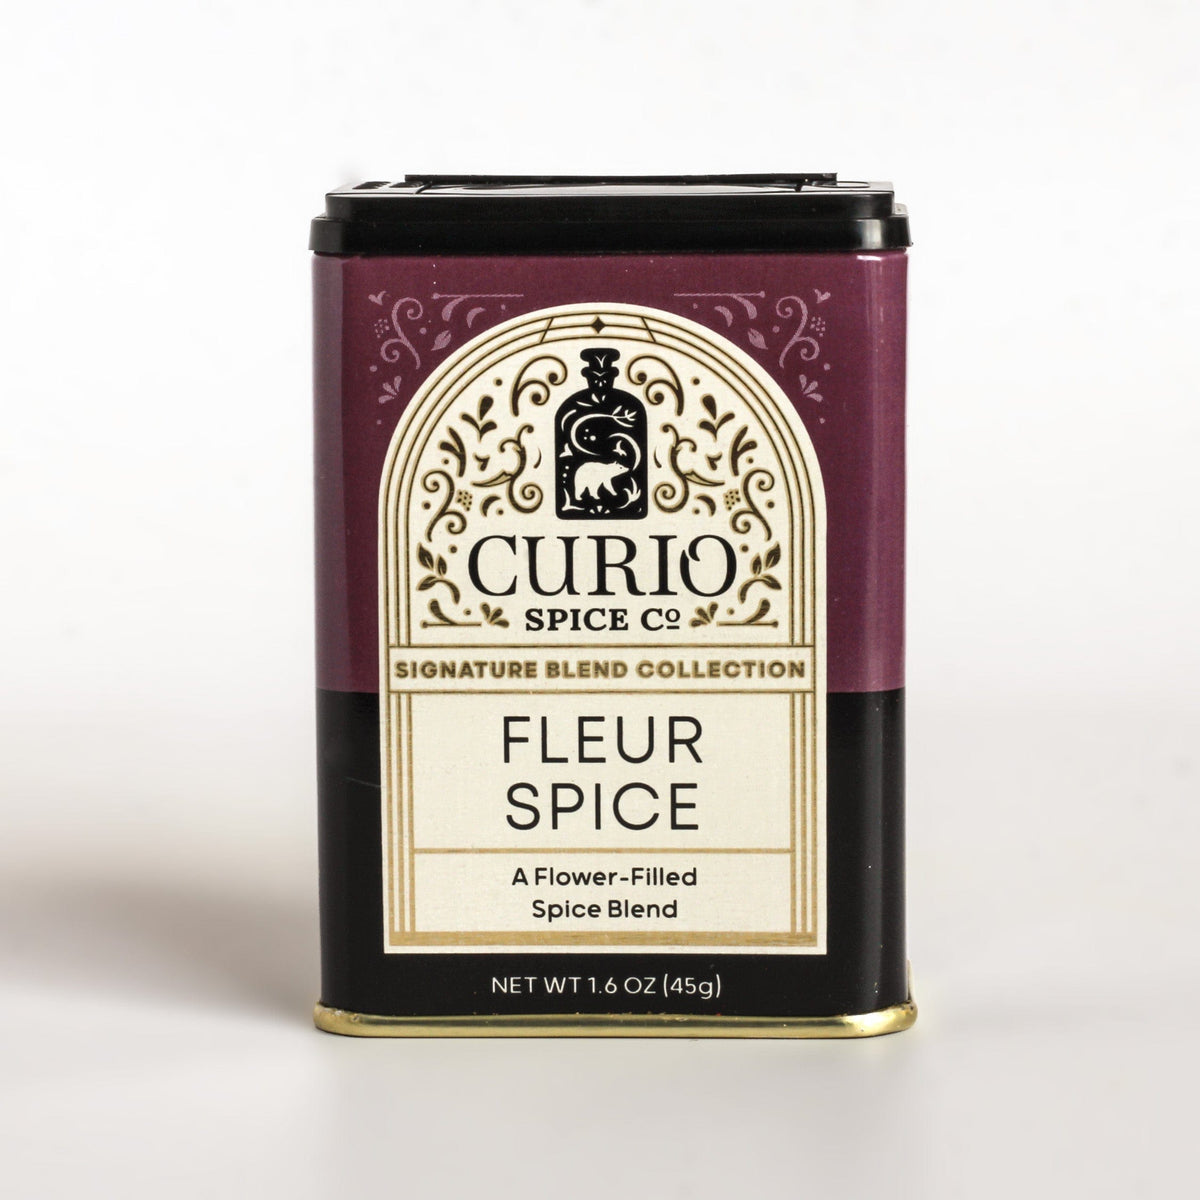 Curio Spice Co Fleur Spice